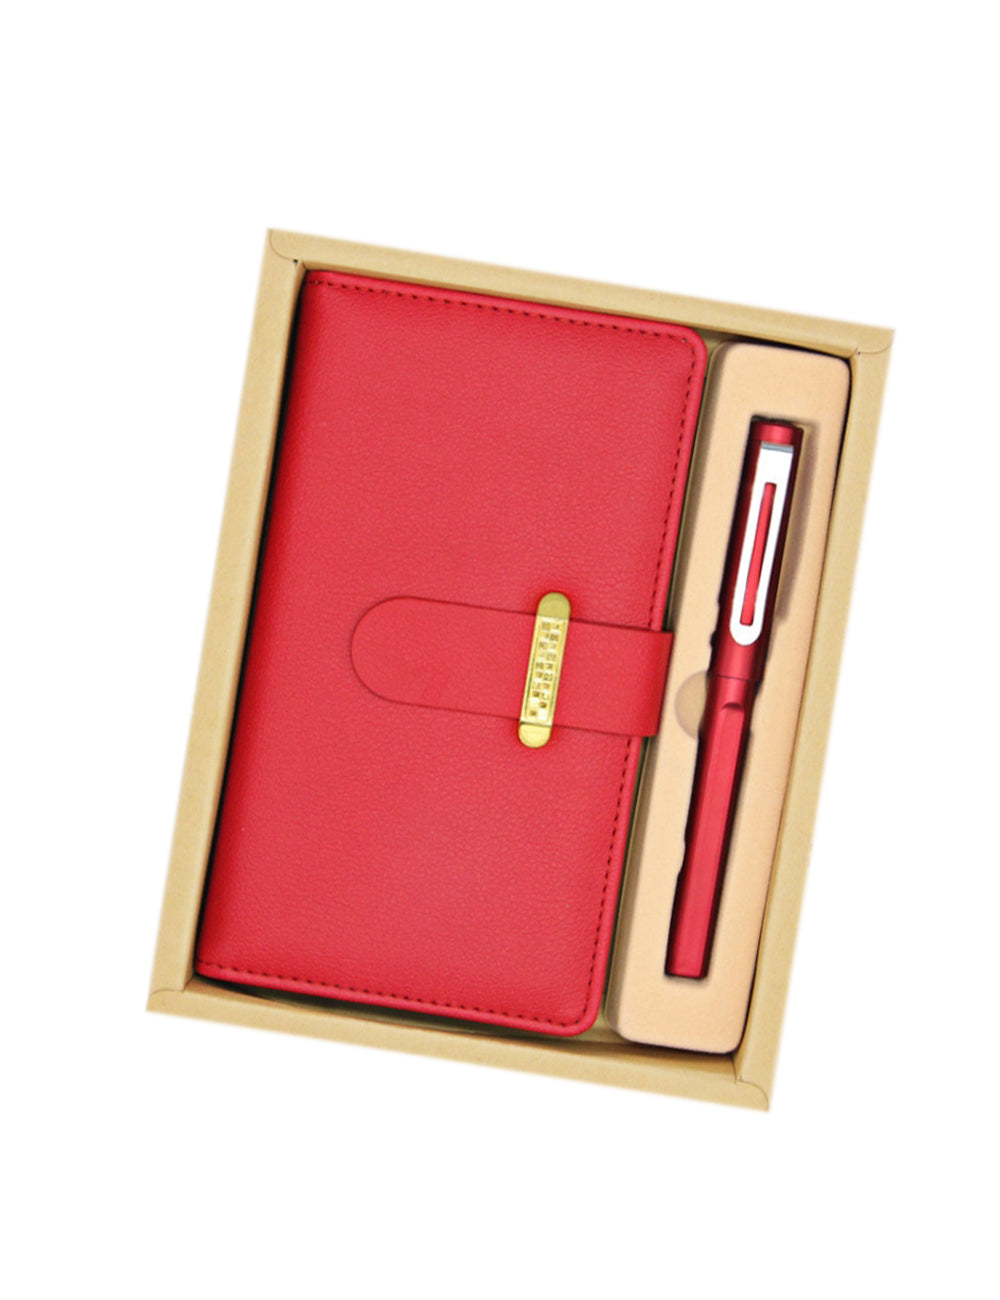 商務筆記本＆筆2件套禮盒印刷- 禮品、贈品、客製化禮贈品專家| 禮歐禮贈品